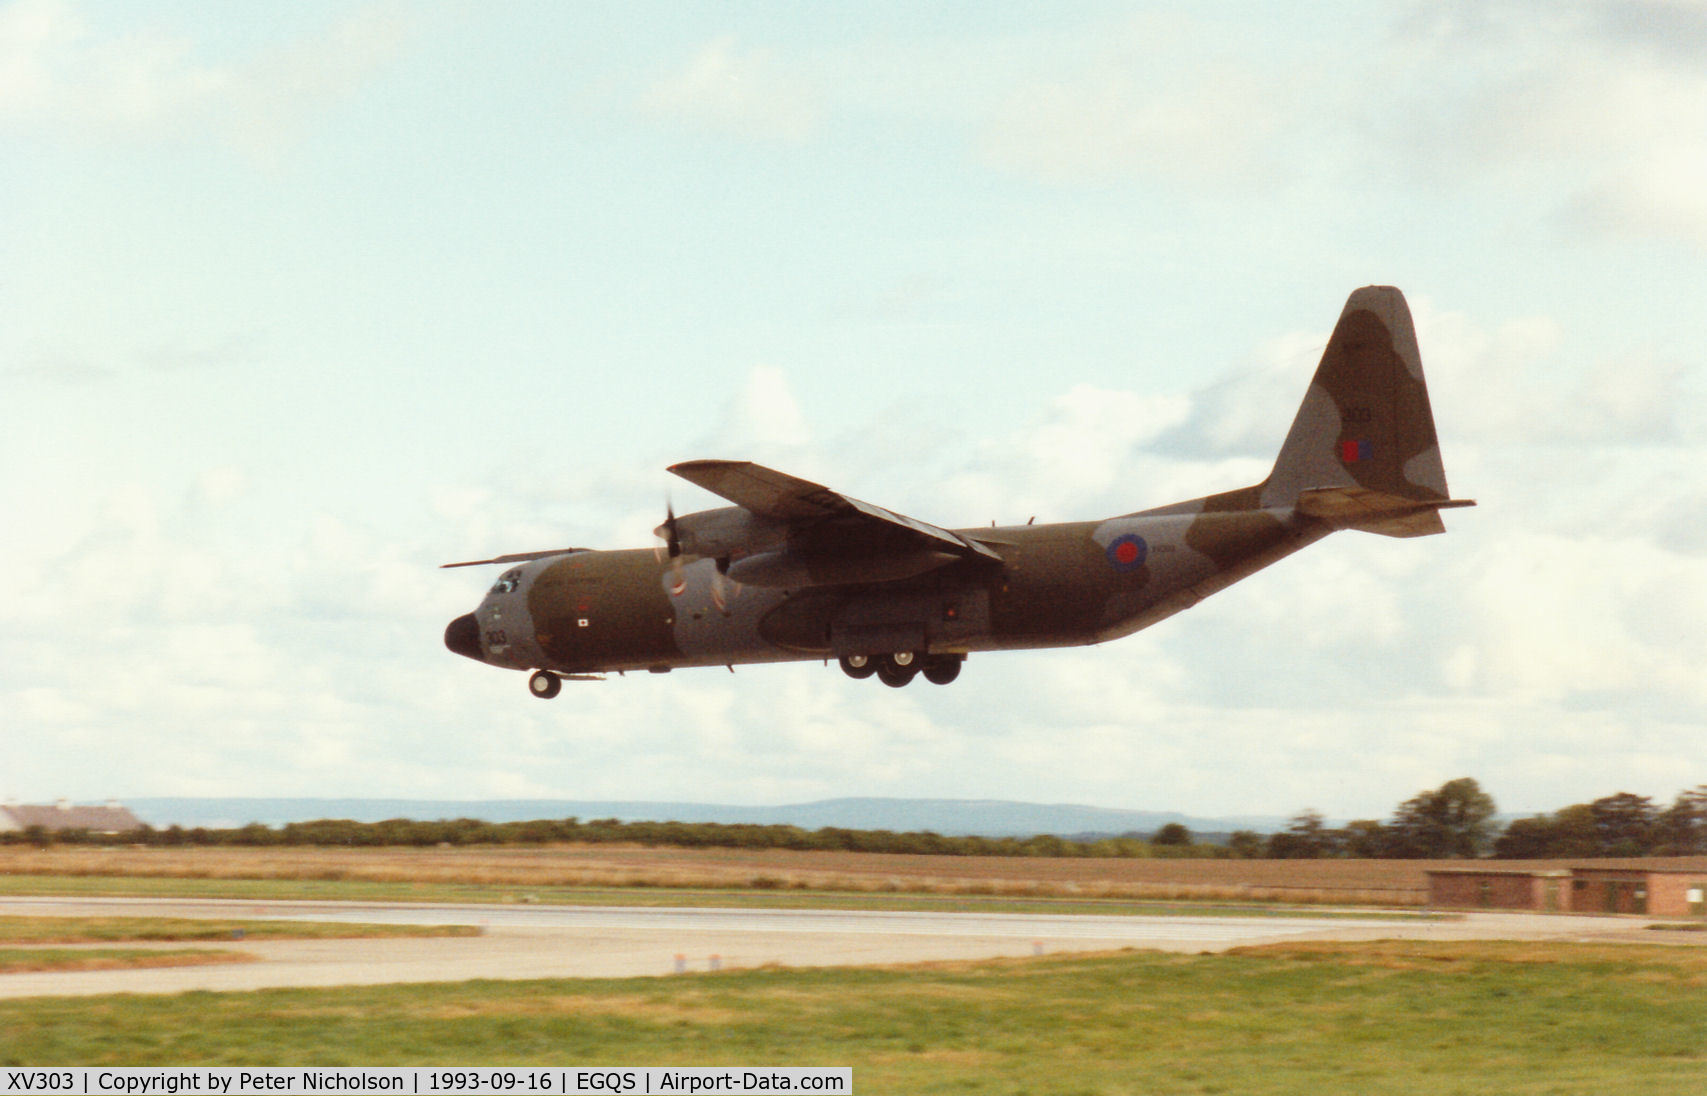 XV303, 1967 Lockheed C-130K Hercules C.3 C/N 382-4271, Hercules C.3 of the Lyneham Transport Wing landing on Runway 05 at RAF Lossiemouth in September 1993.